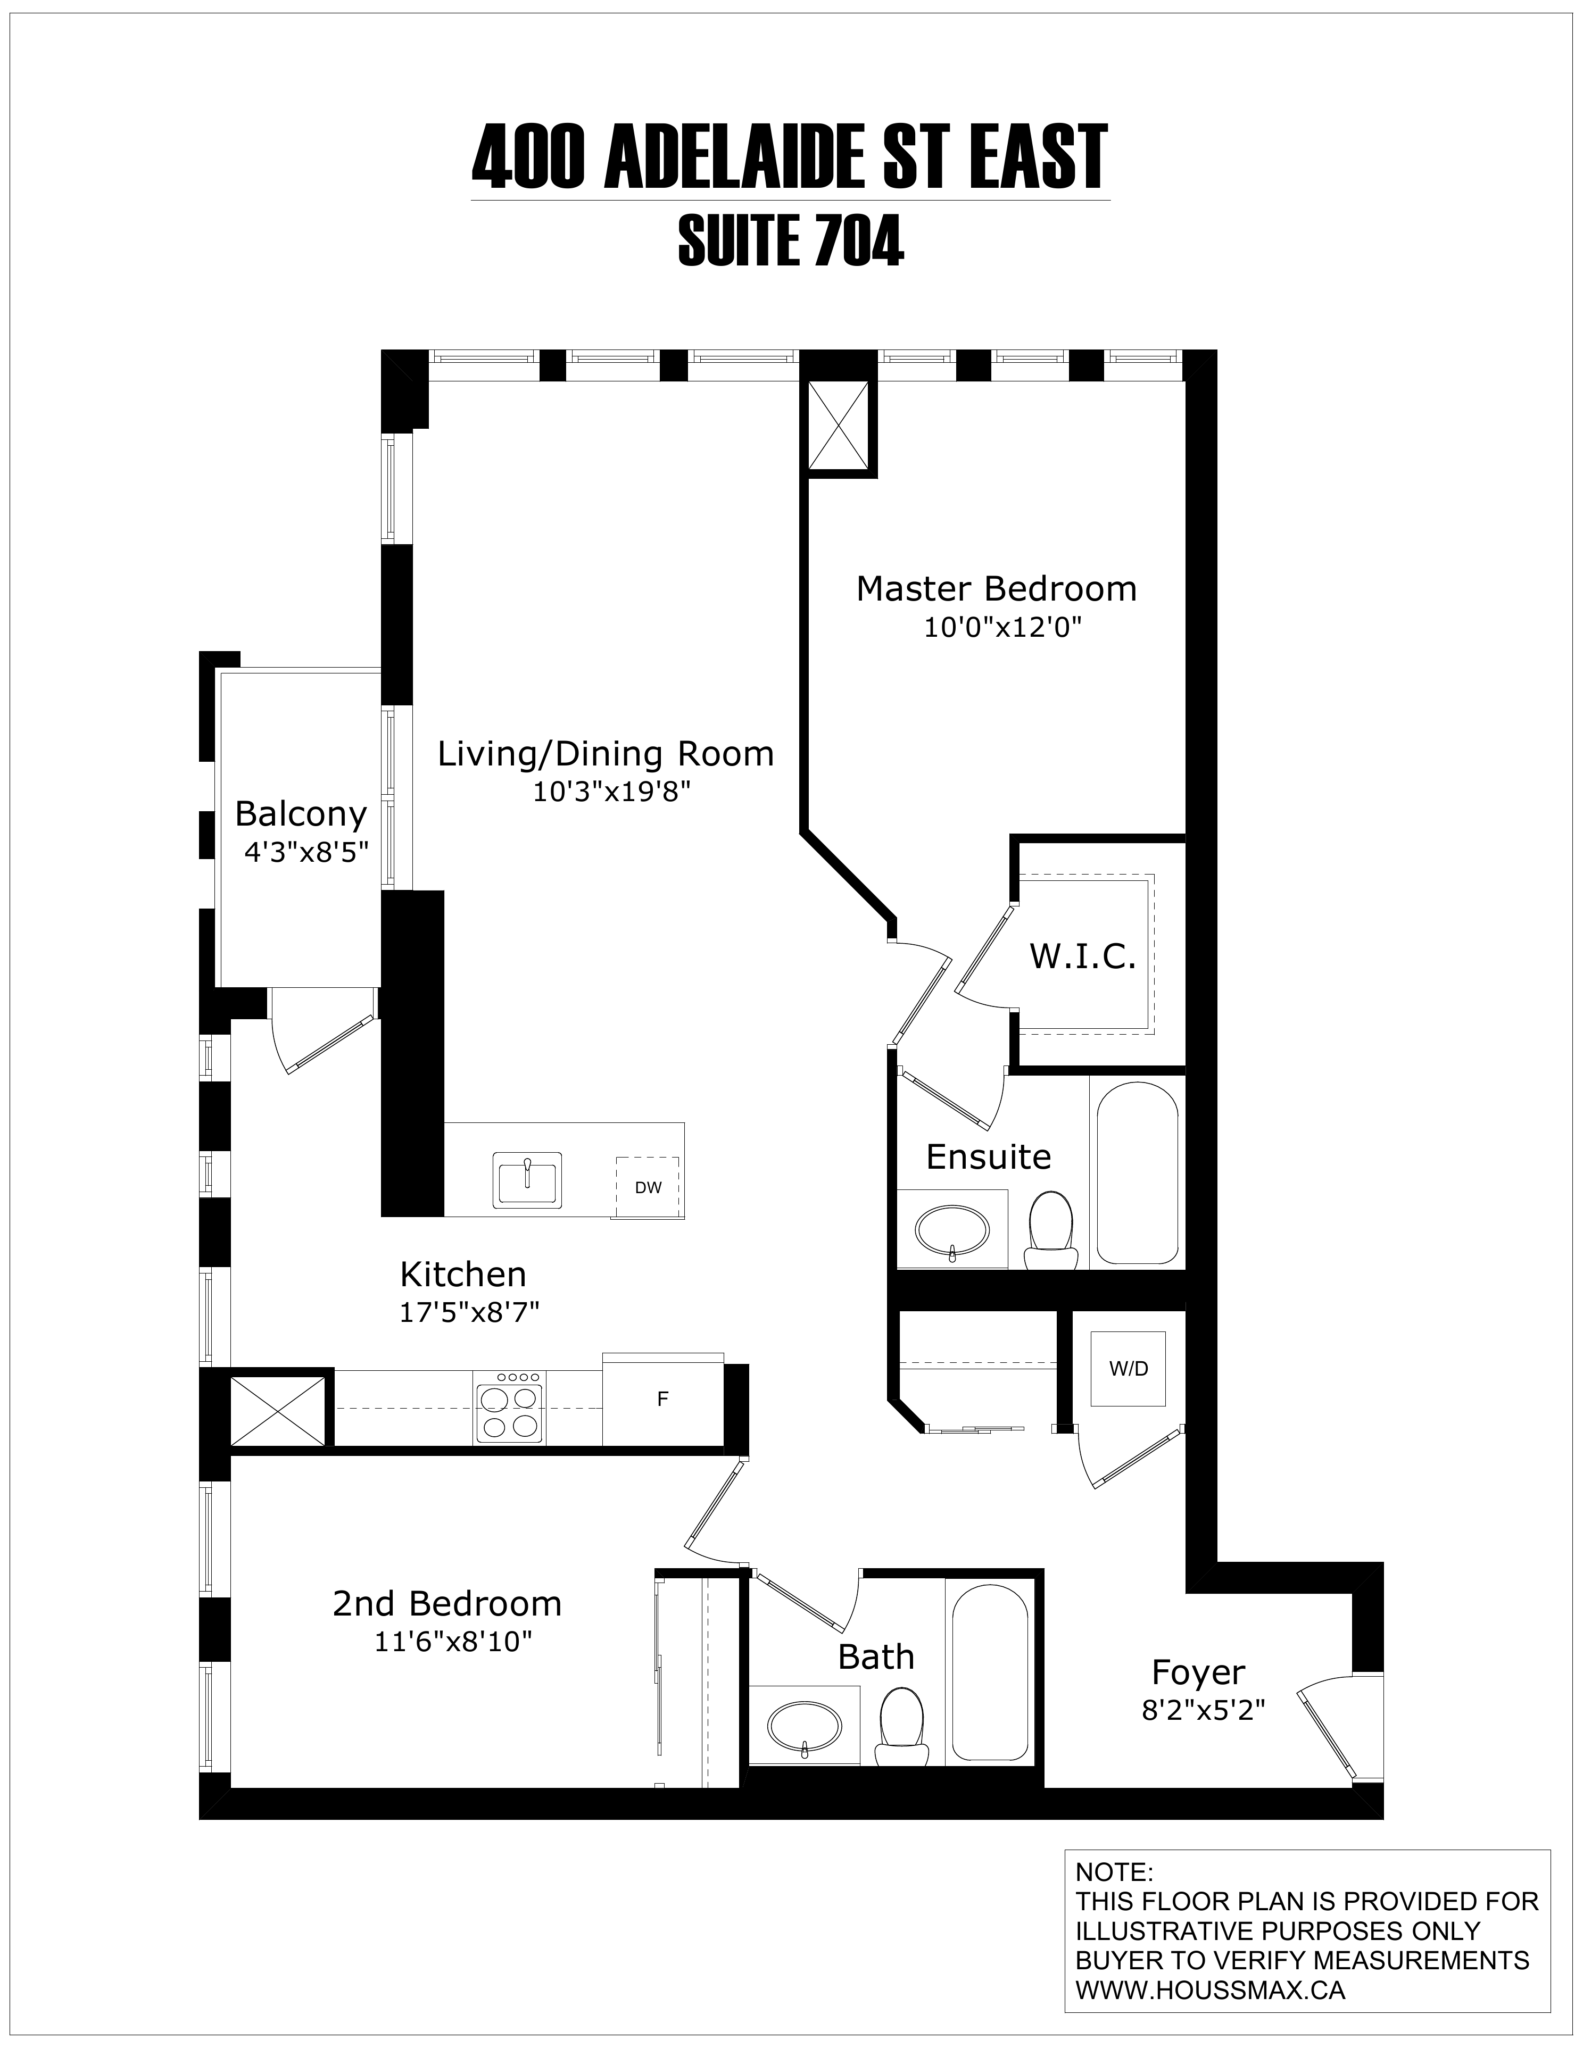 Black and white floor plans for 400 Adelaide Street East - Unit 704